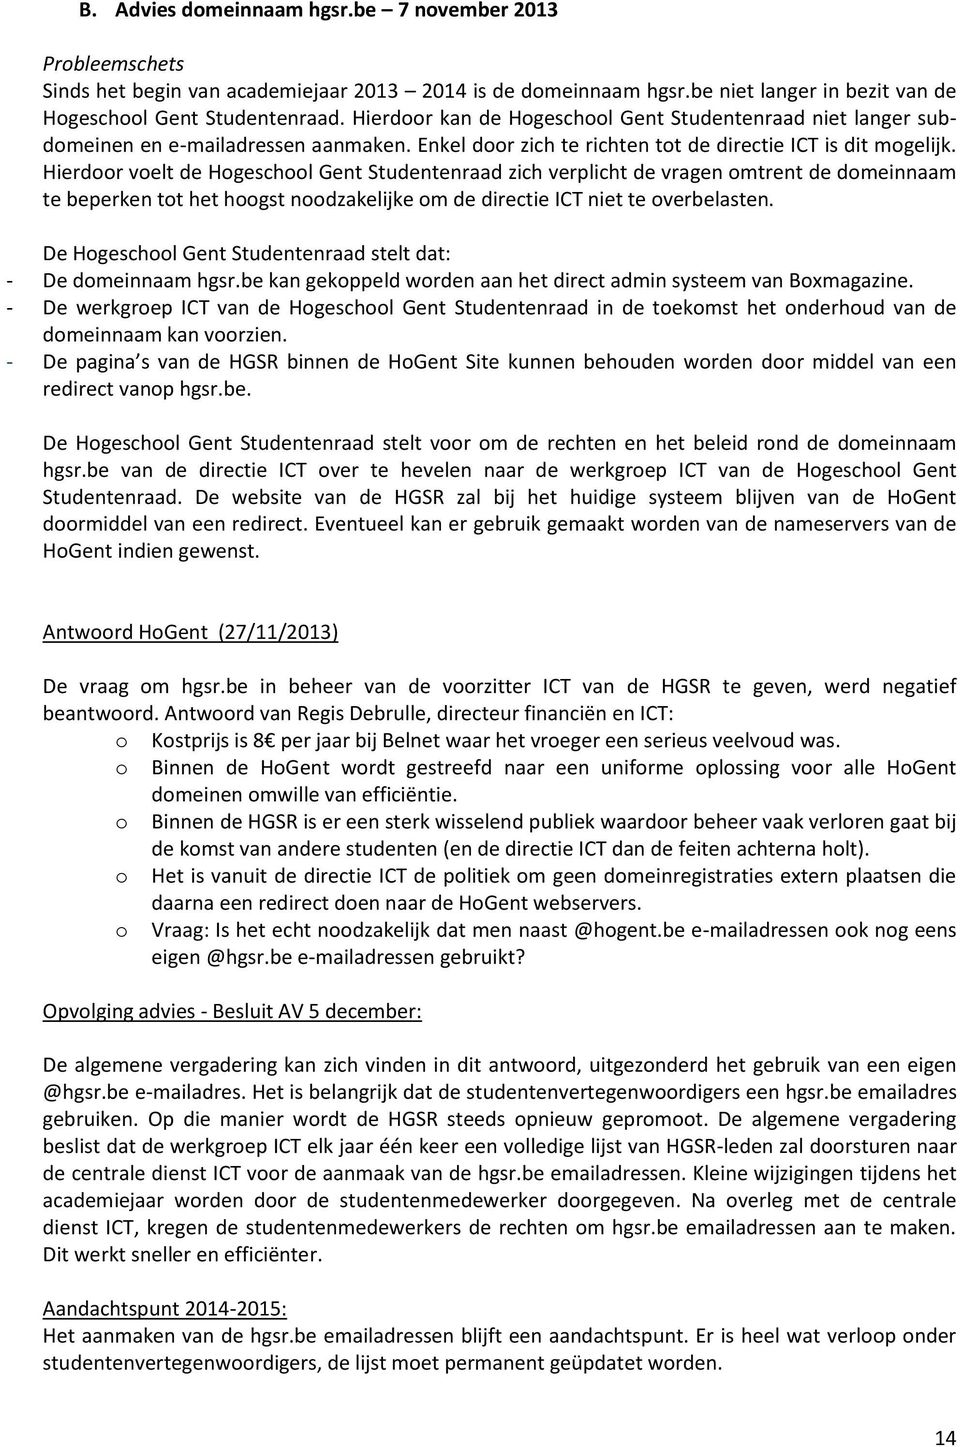 Hierdoor voelt de Hogeschool Gent Studentenraad zich verplicht de vragen omtrent de domeinnaam te beperken tot het hoogst noodzakelijke om de directie ICT niet te overbelasten.